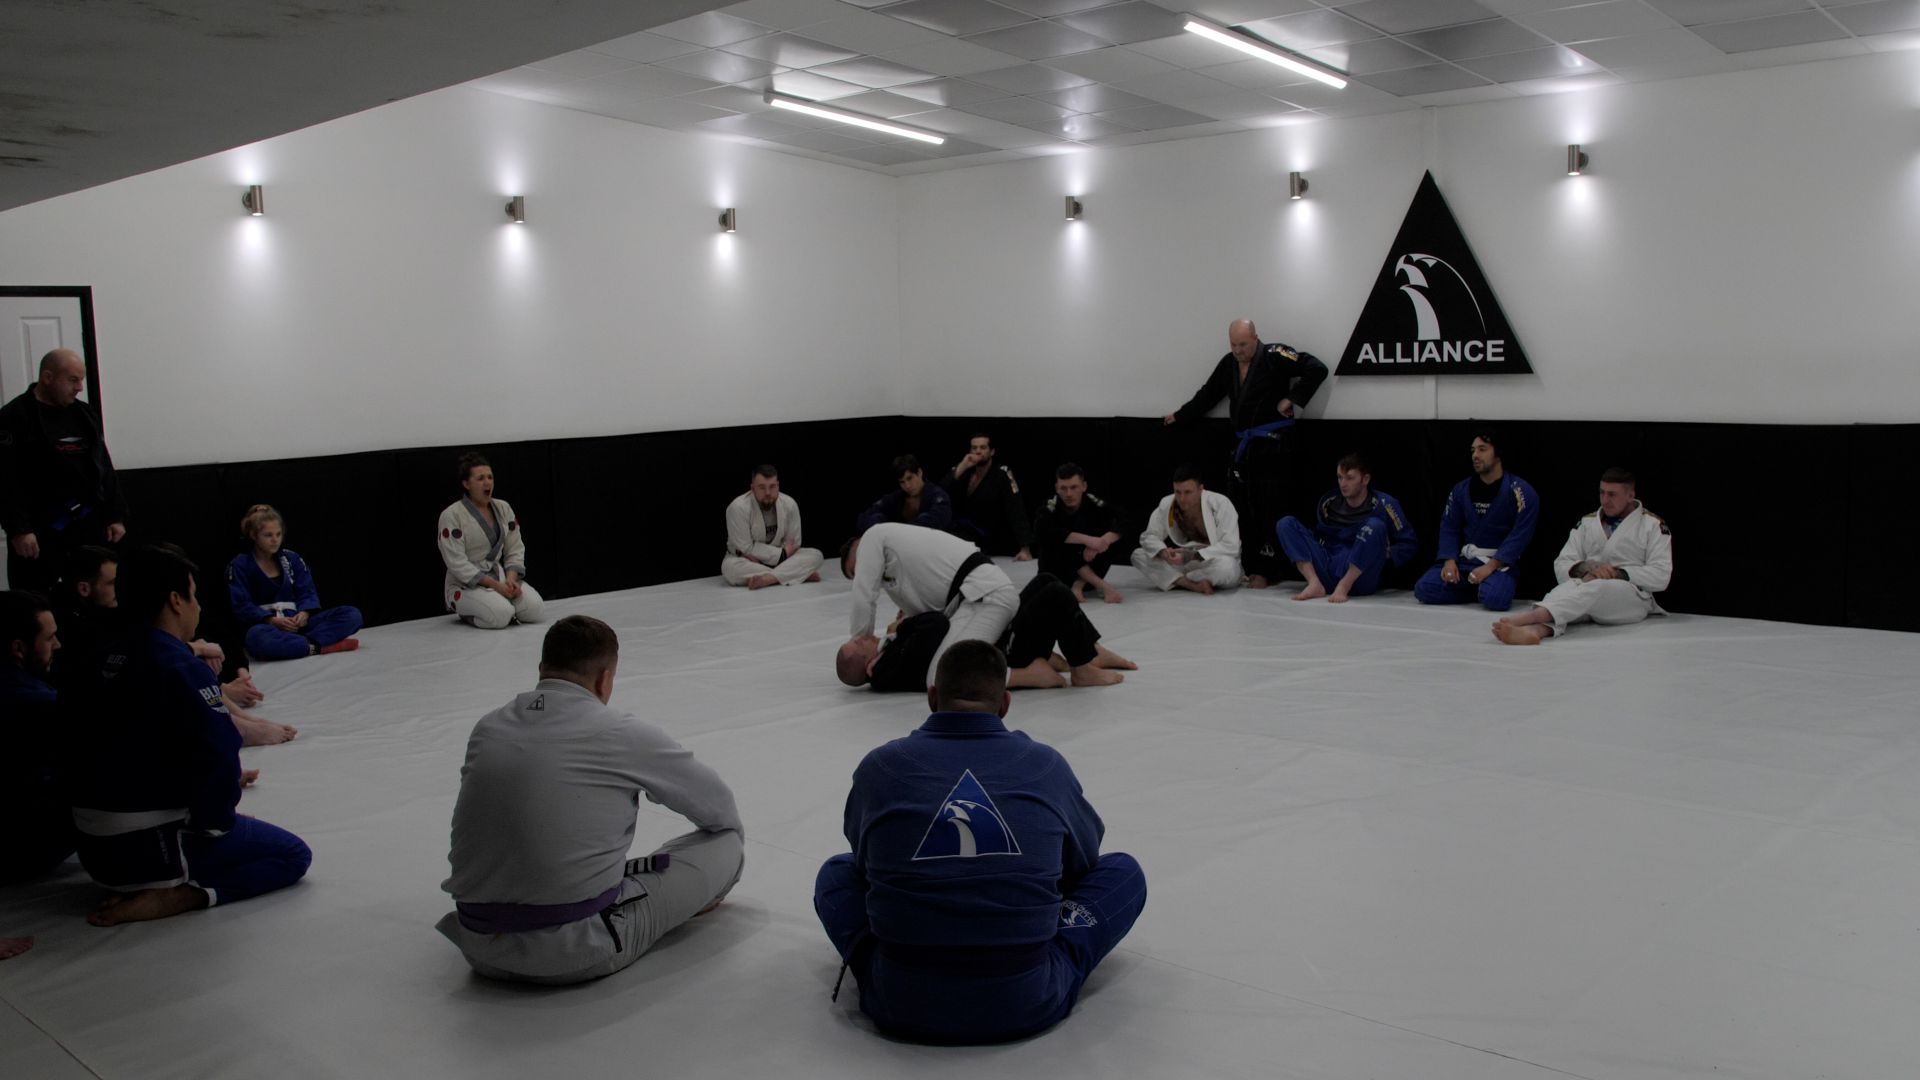 Alliance Newcastle Jiu Jitsu gym - inside the gym with some of its members